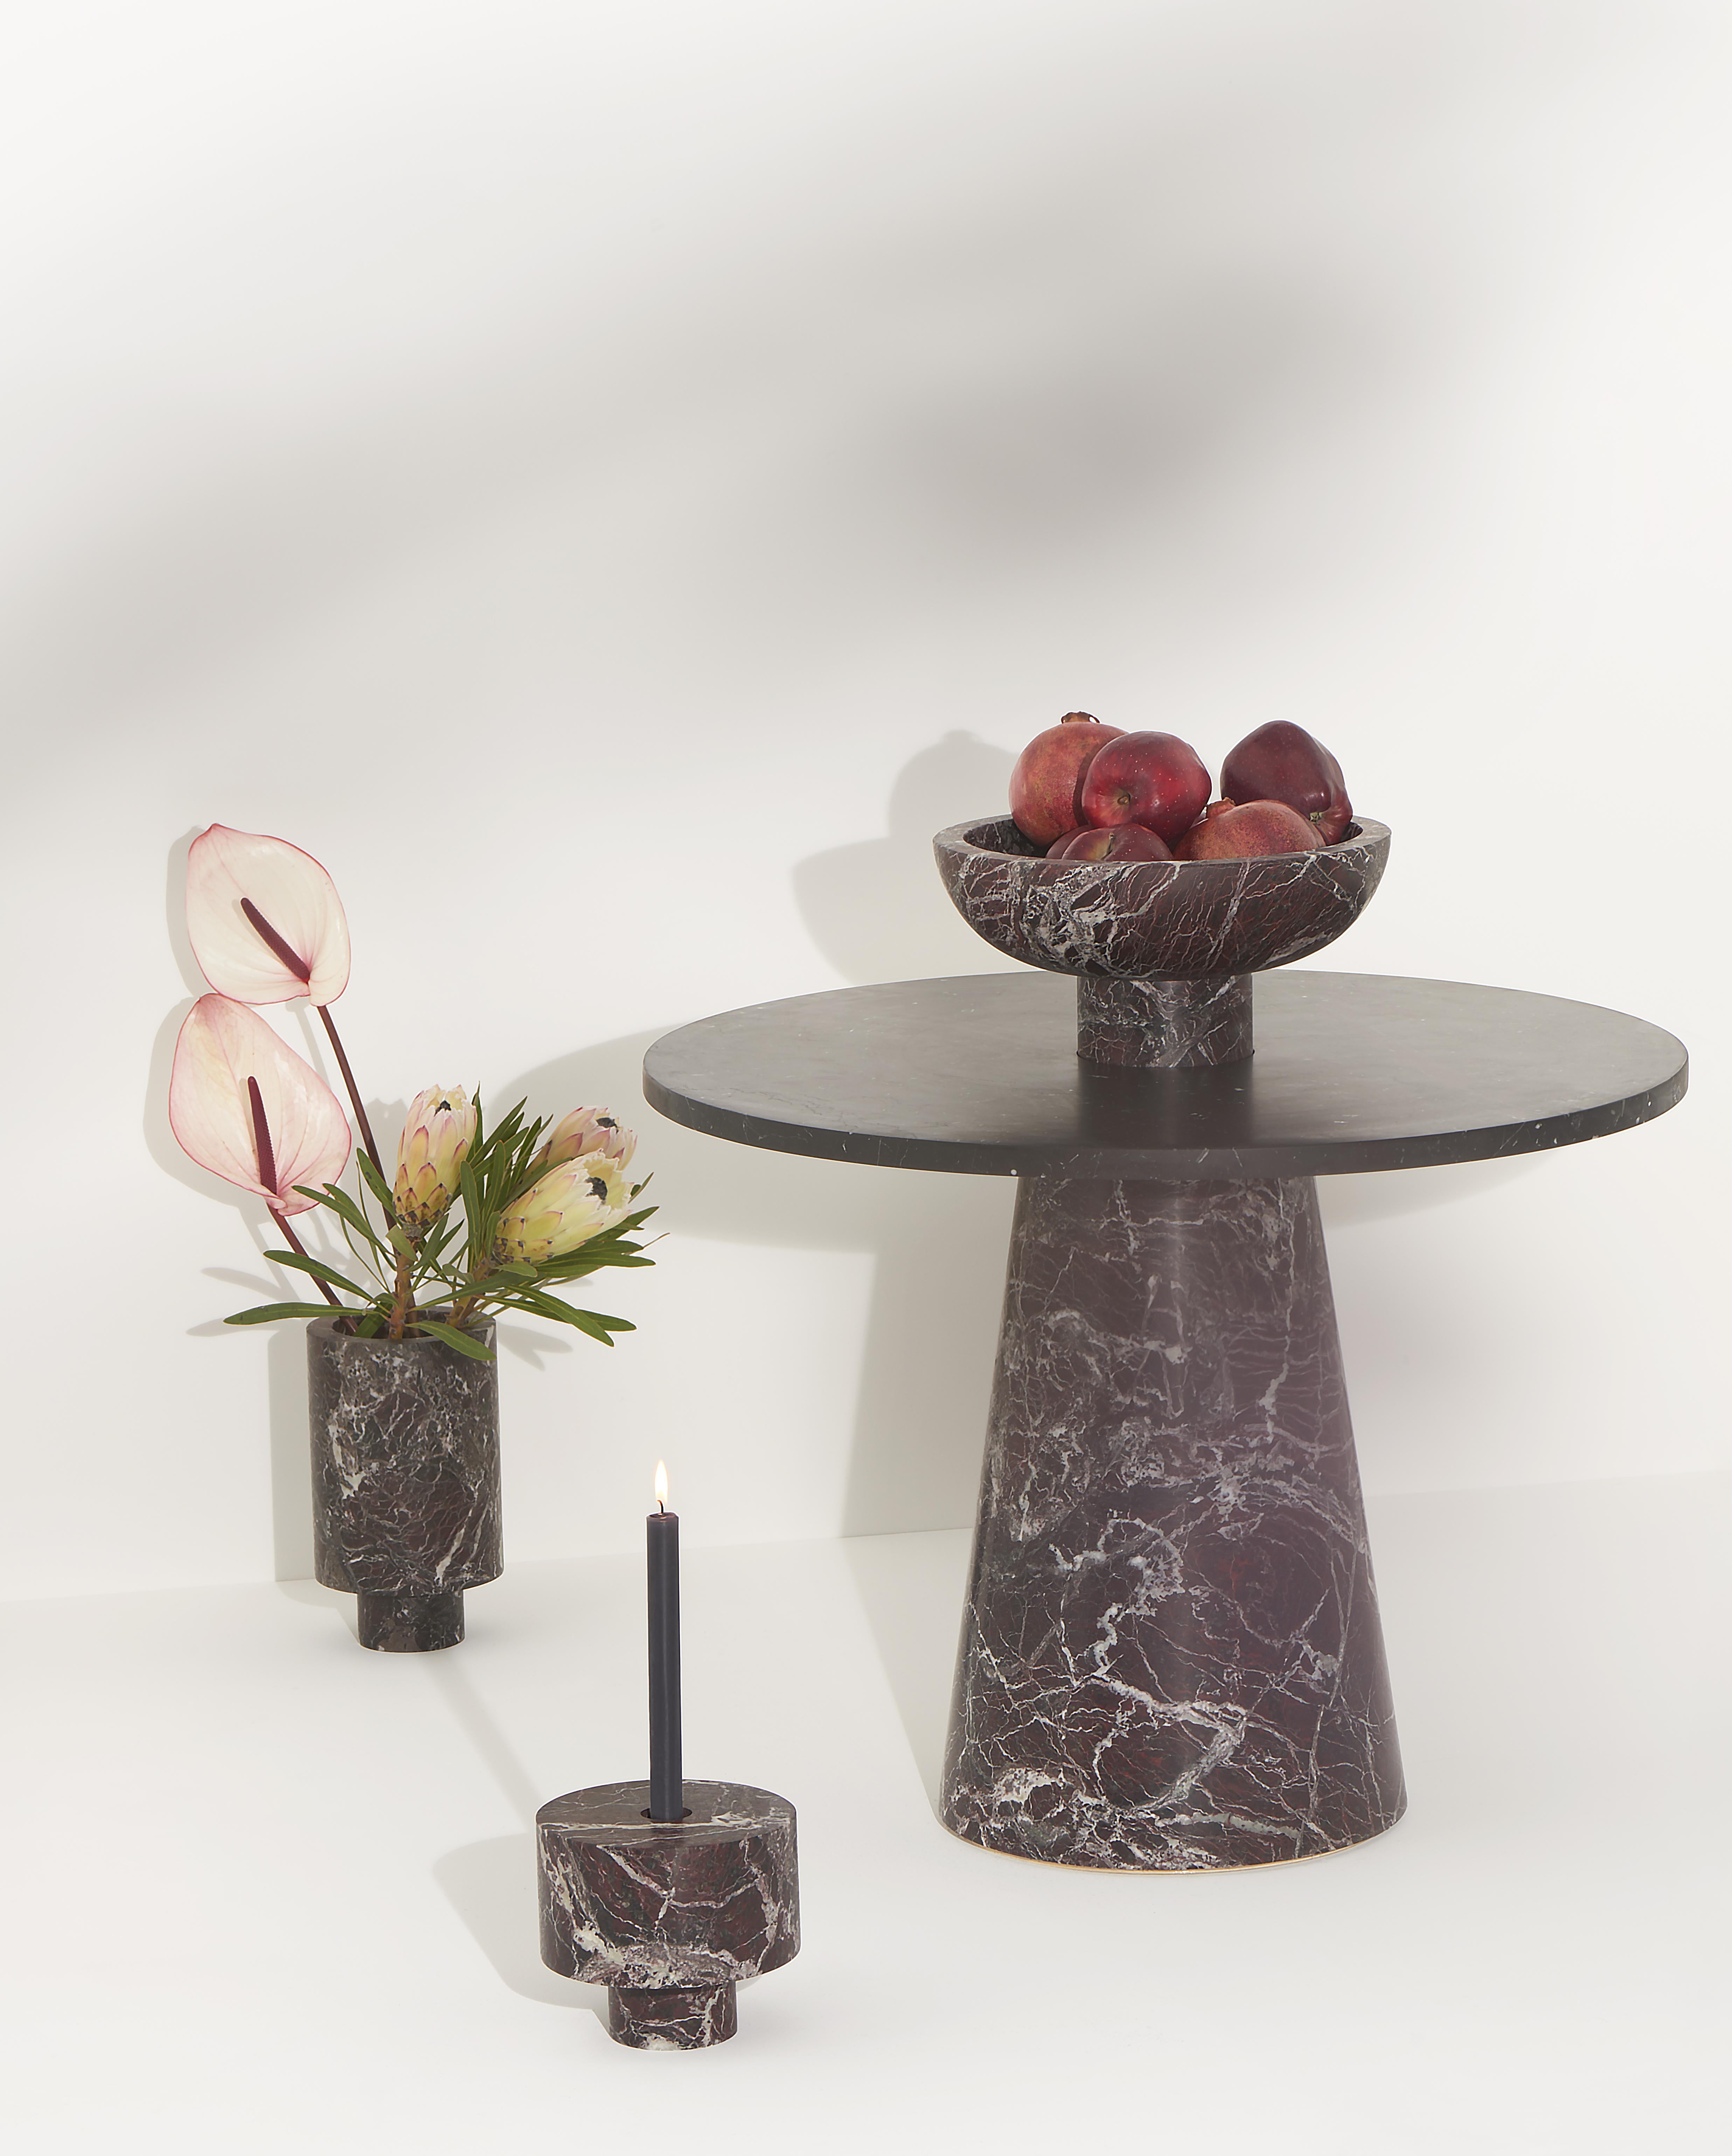 Inside Out Fruit Bowl en marbre rouge Levanto, conçu par la designer de renommée internationale Karen Chekerdjian - il est également disponible dans d'autres couleurs.
Elle fait partie de la Collection S'épanouir - tables et accessoires (coupes à